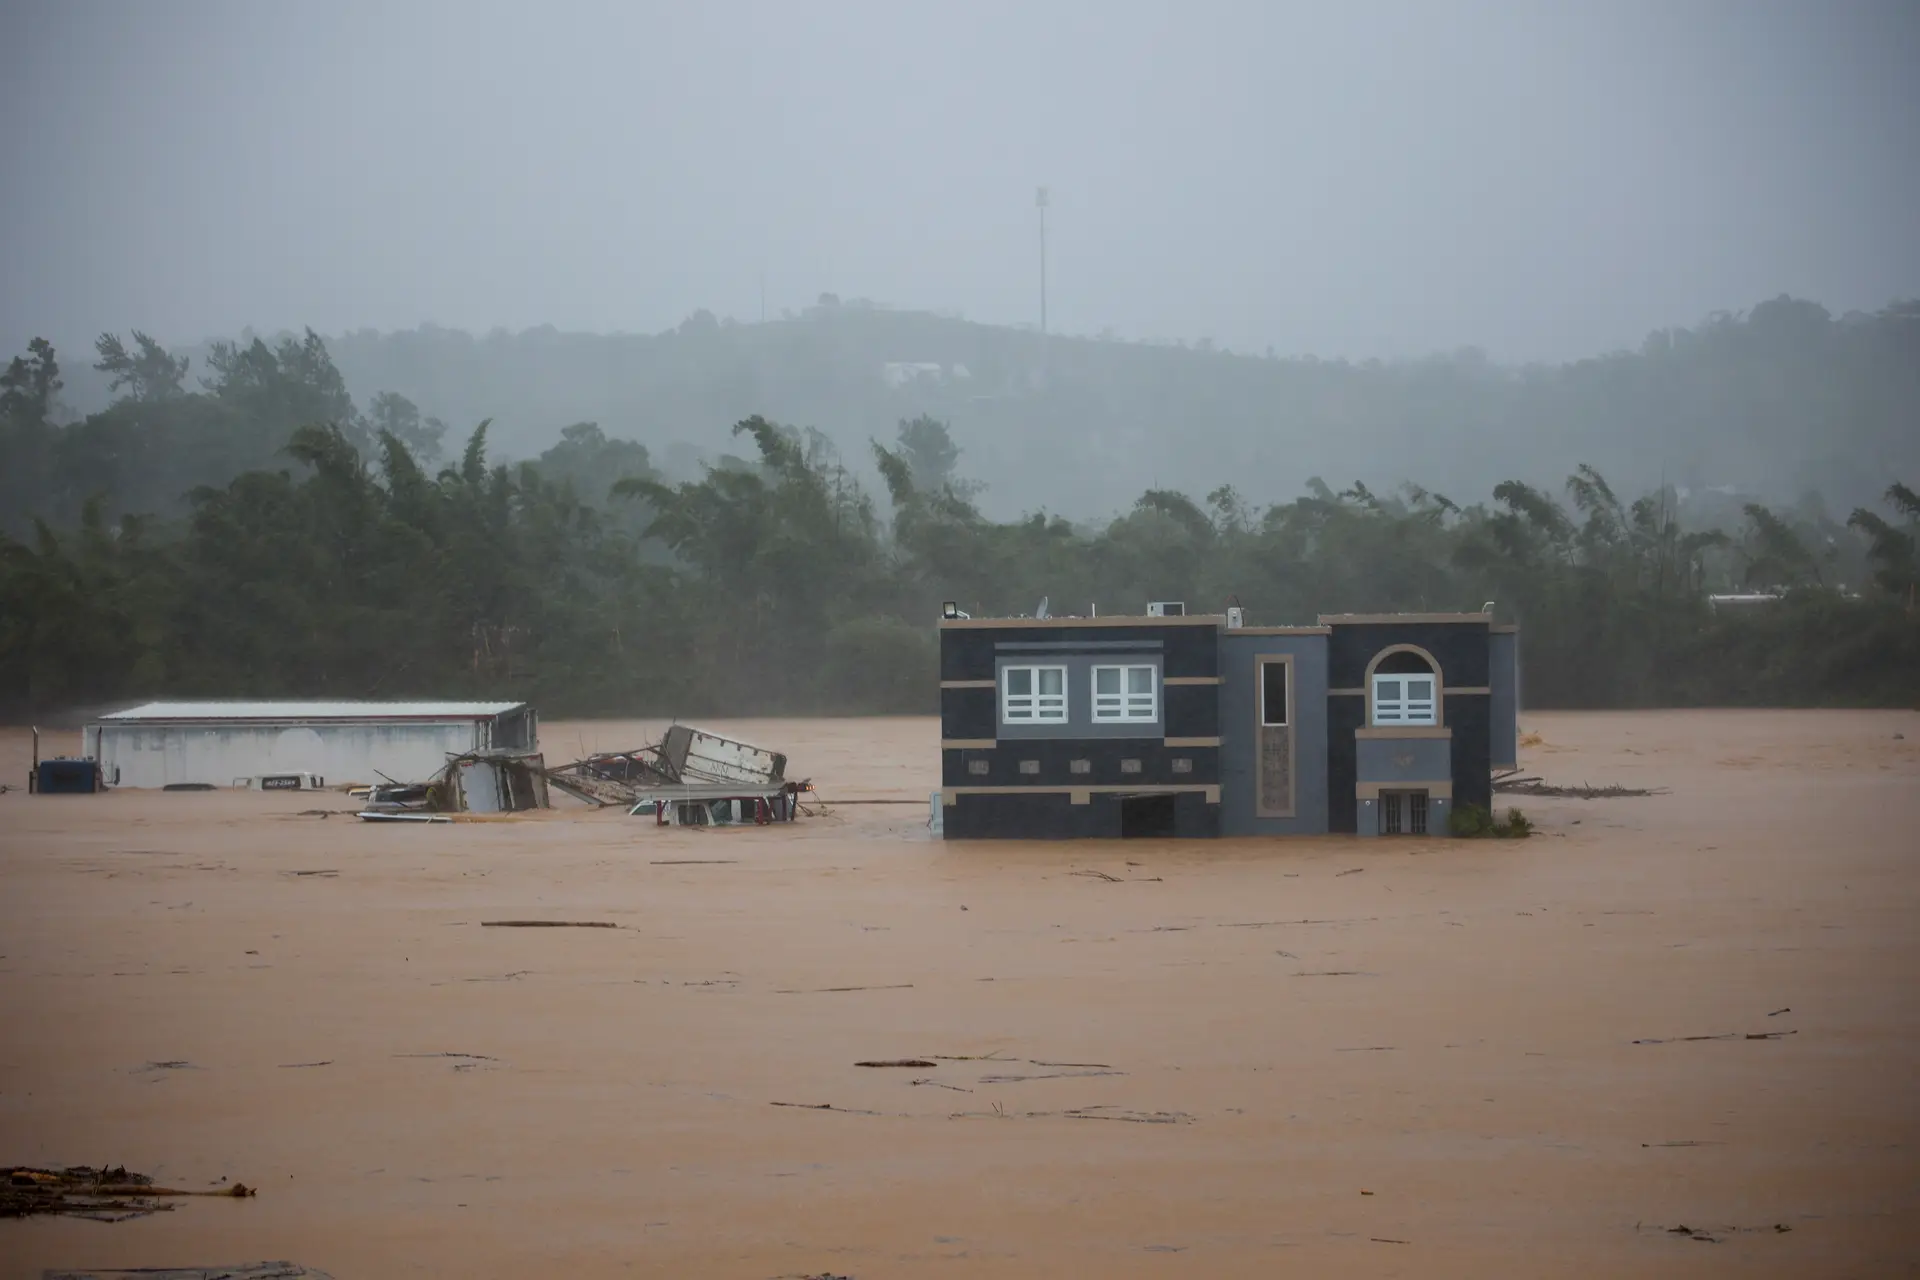 Casa inundaa devido a cheias provocadas pela passagem do furacão Fiona em Porto Rico.